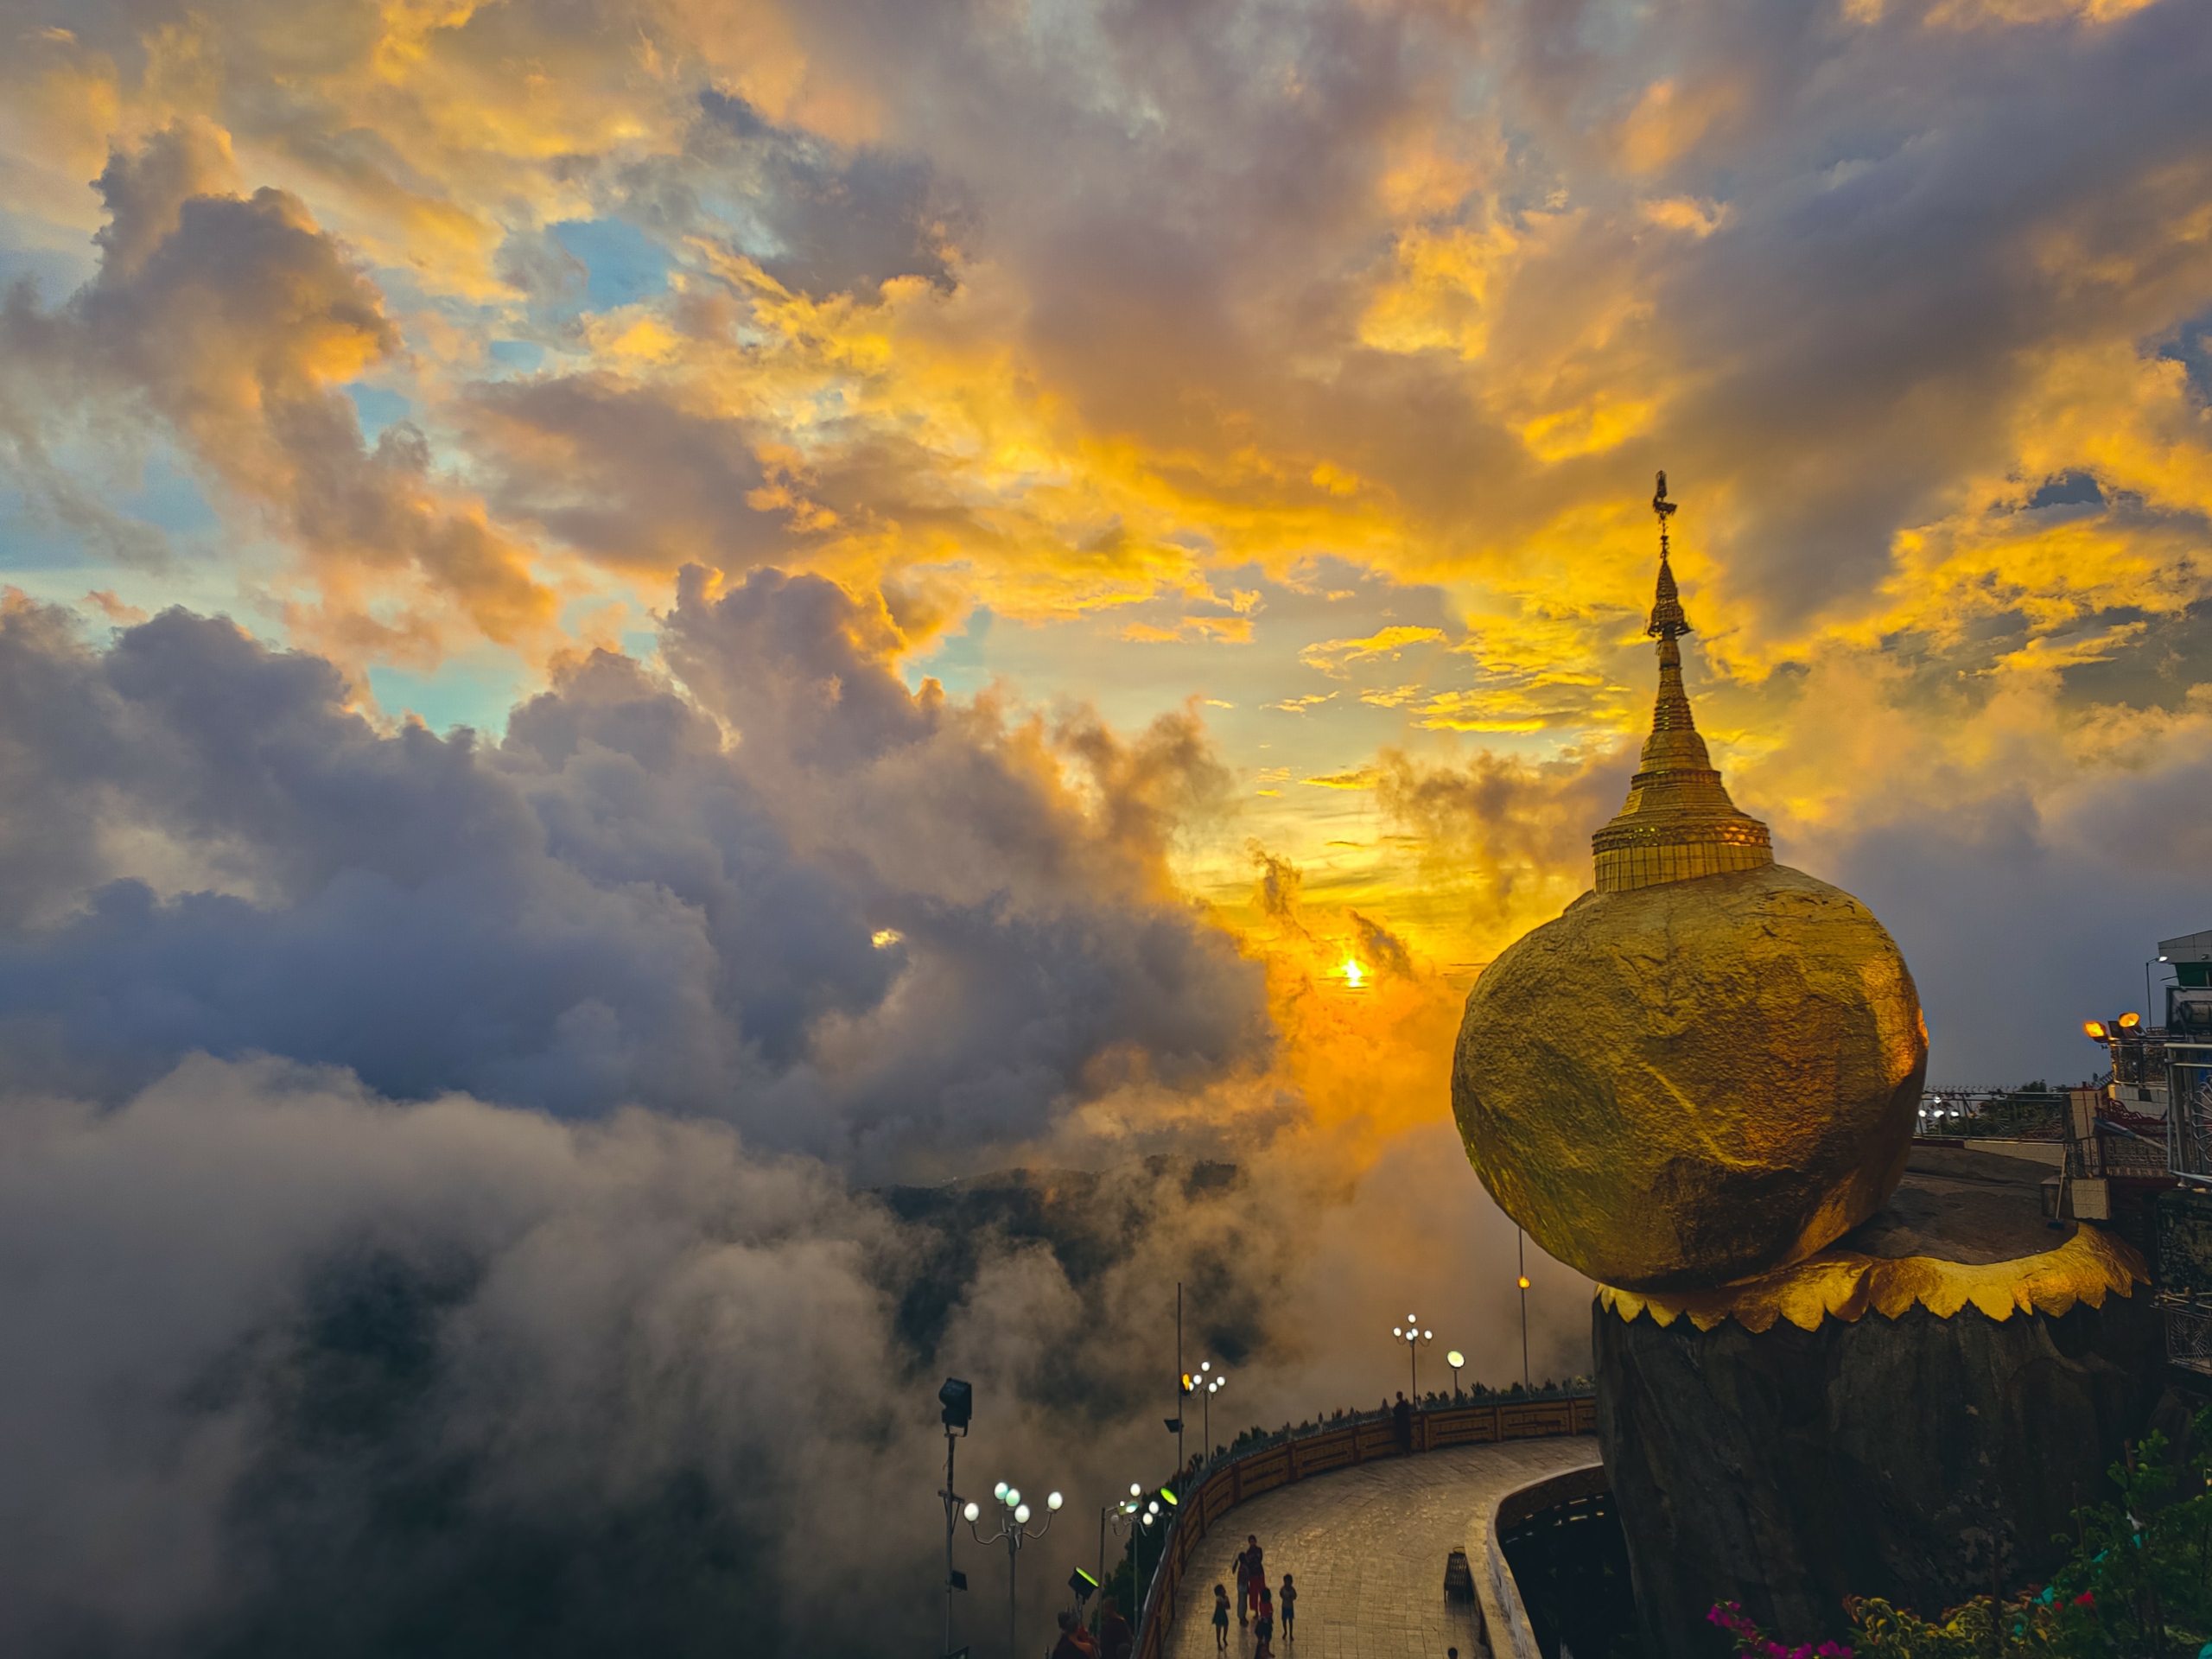 Bức ảnh “Sunset” (Hoàng hôn) của nhiếp ảnh gia Aung Chan Thar. (Ảnh: Đăng dưới sự cho phép của anh Aung Chan Thar/Hiệp hội Khí tượng Hoàng gia)